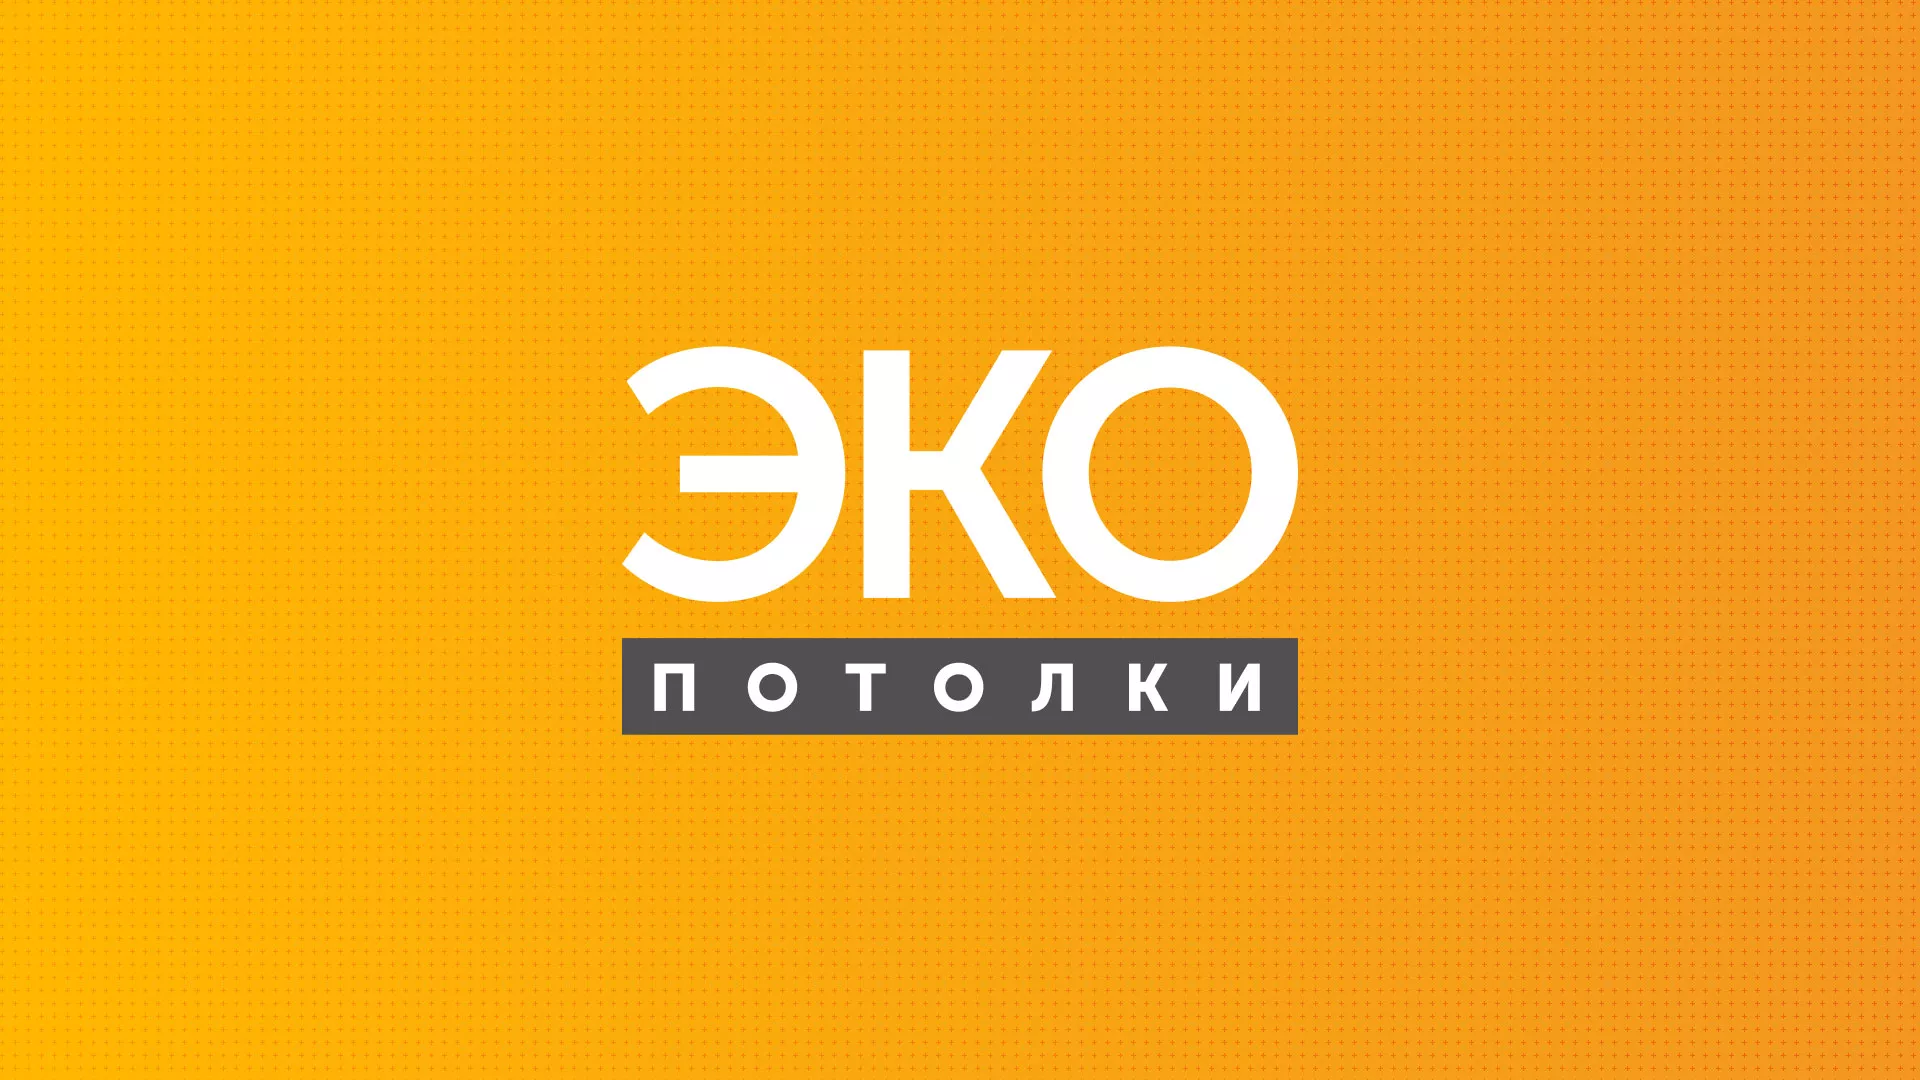 Разработка сайта по натяжным потолкам «Эко Потолки» в Орехово-Зуево